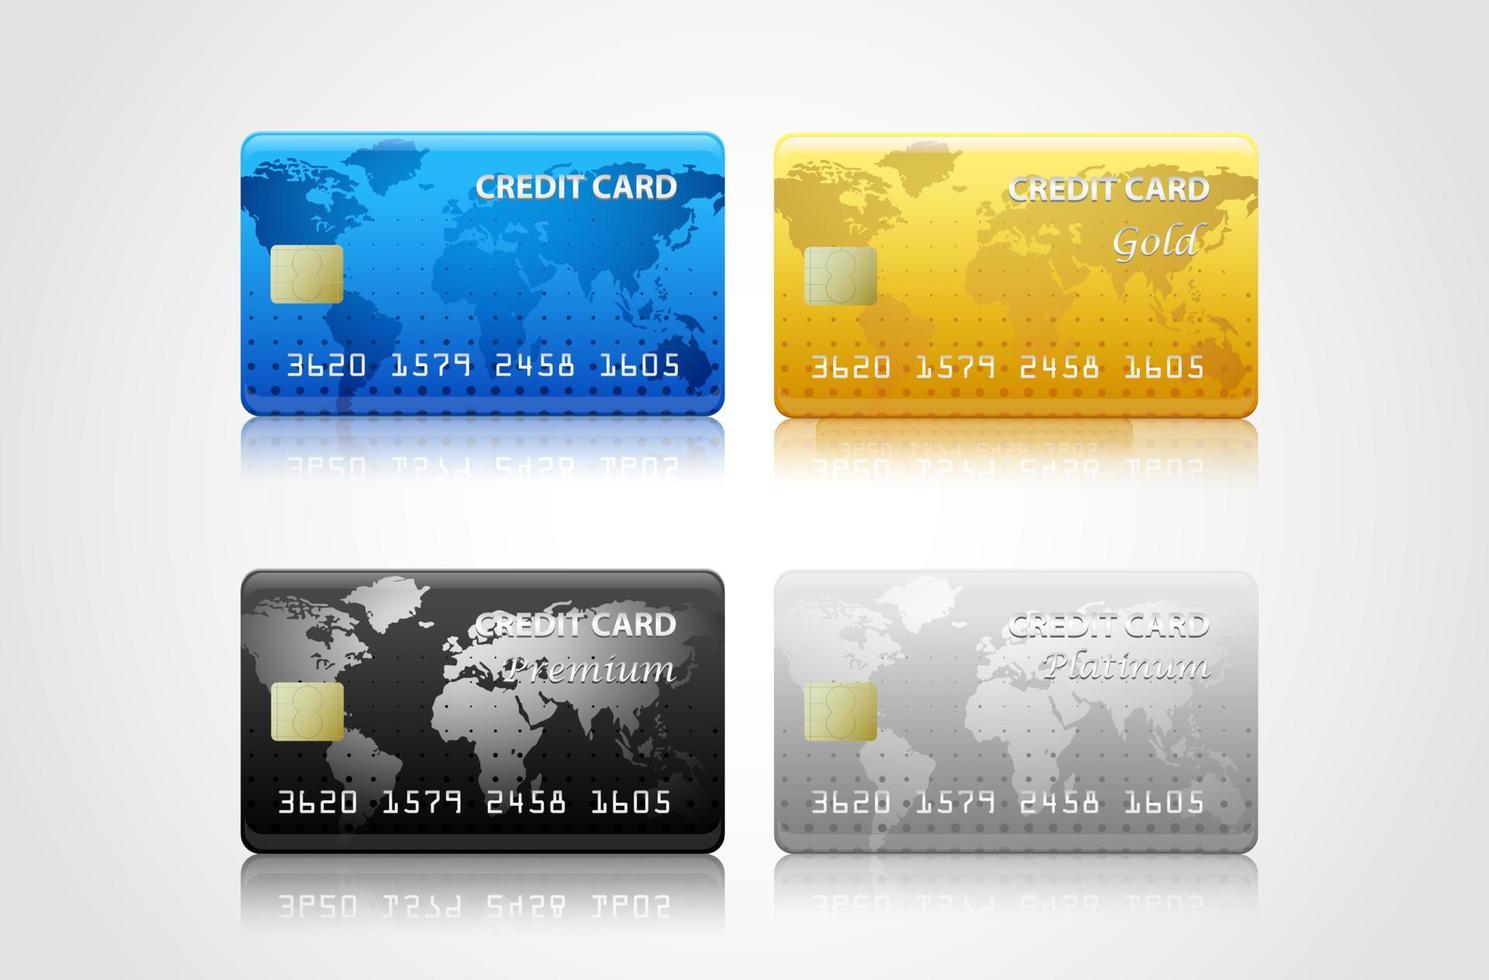 coleção de cartões de crédito isolados em branco. vetor